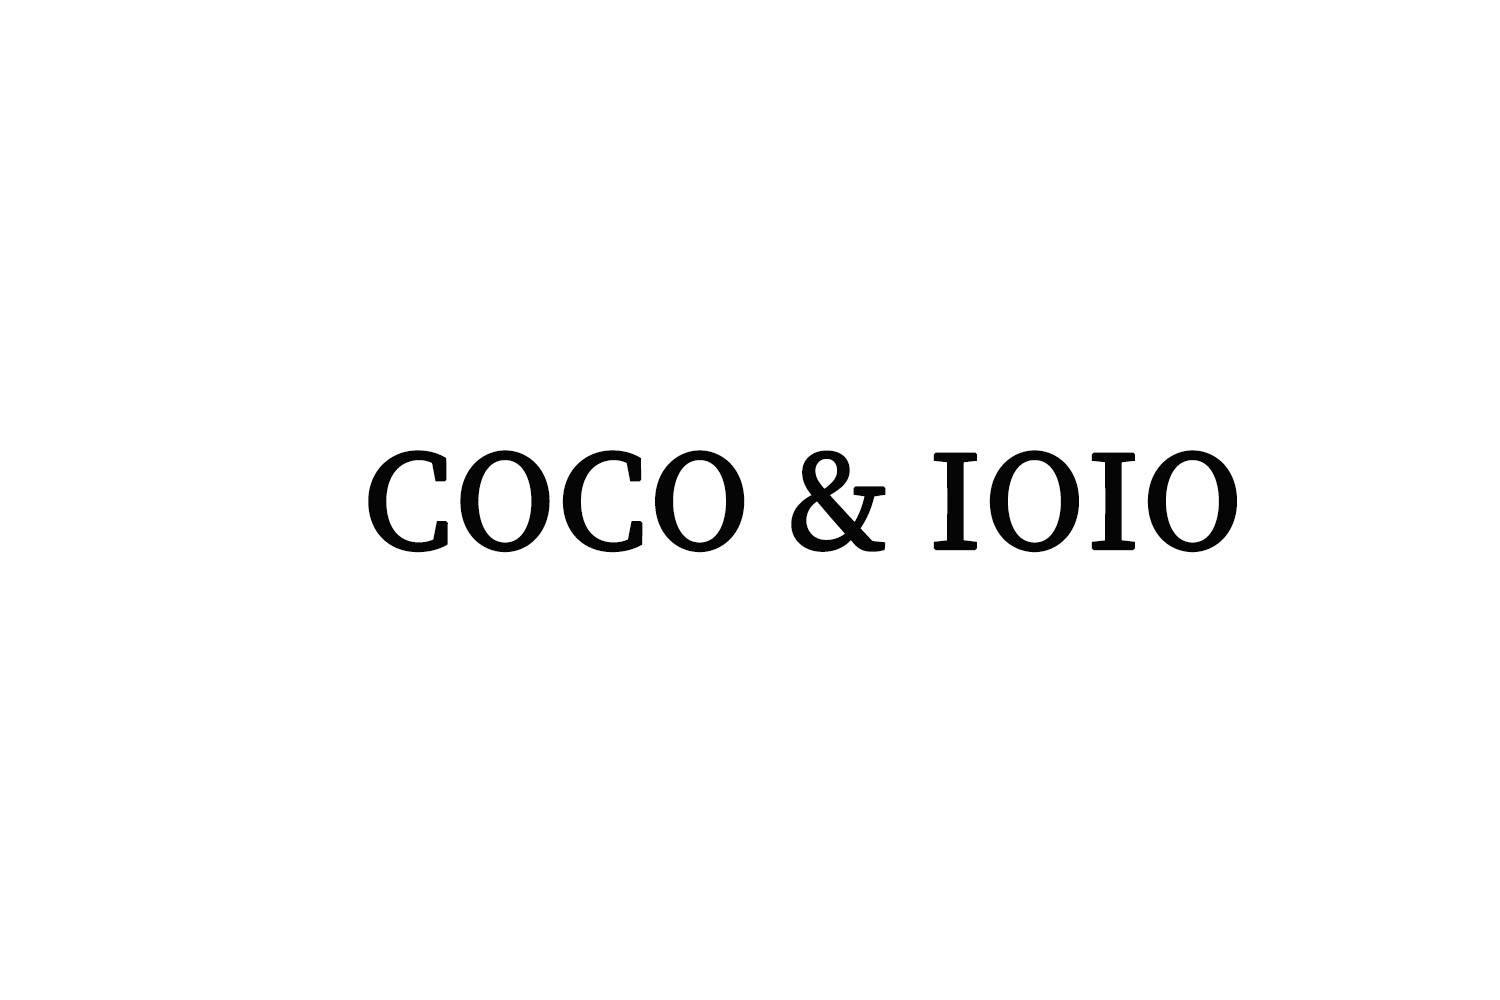 COCO & IOIO